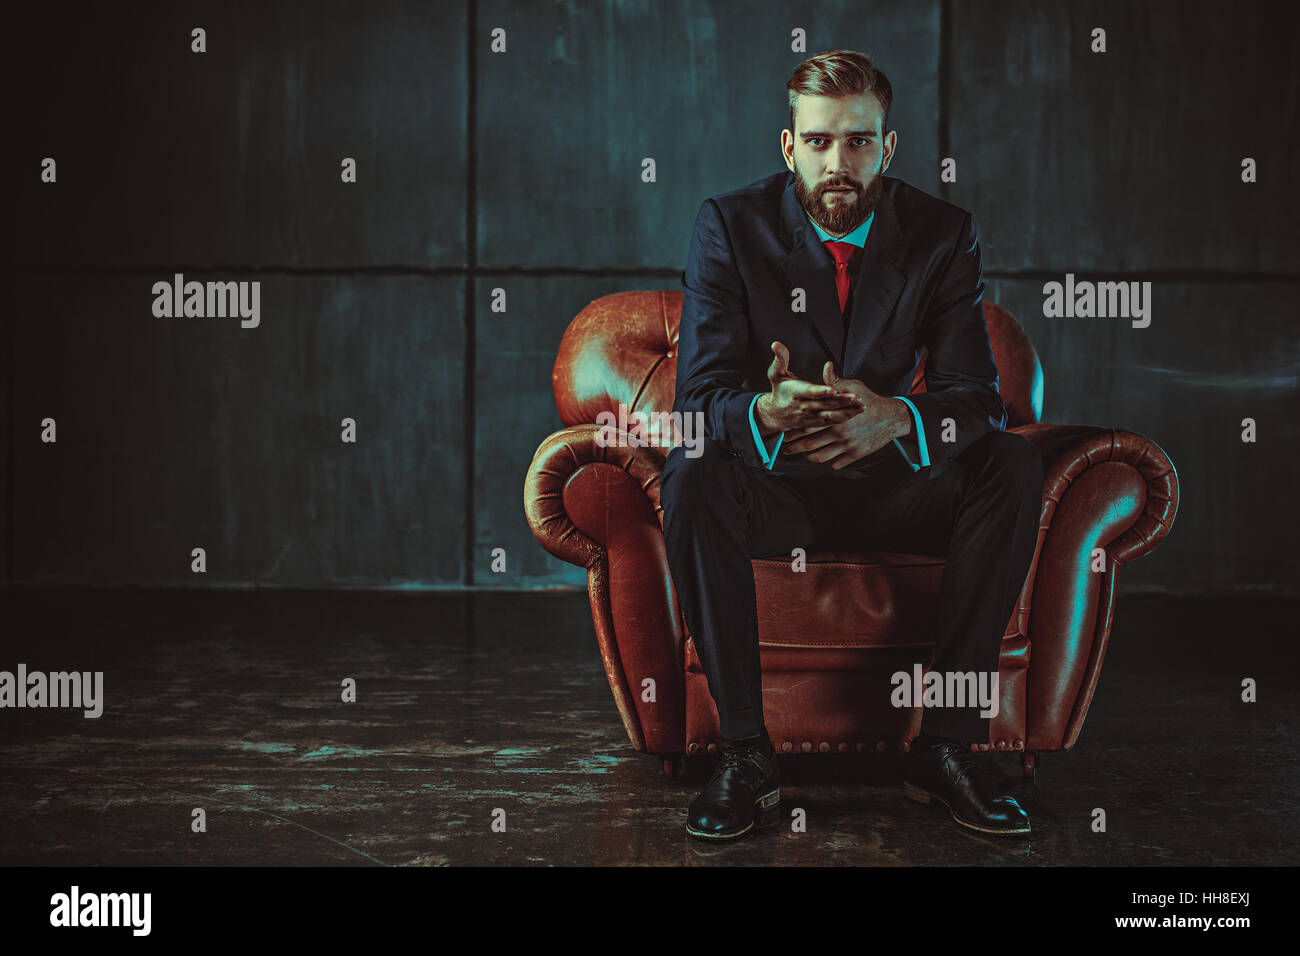 Junge hübsche Geschäftsmann mit Bart im schwarzen Anzug auf Stuhl sitzend und im Gespräch mit Lautsprecher. Film-Stil-Retro-Farben-Effekt. Stockfoto